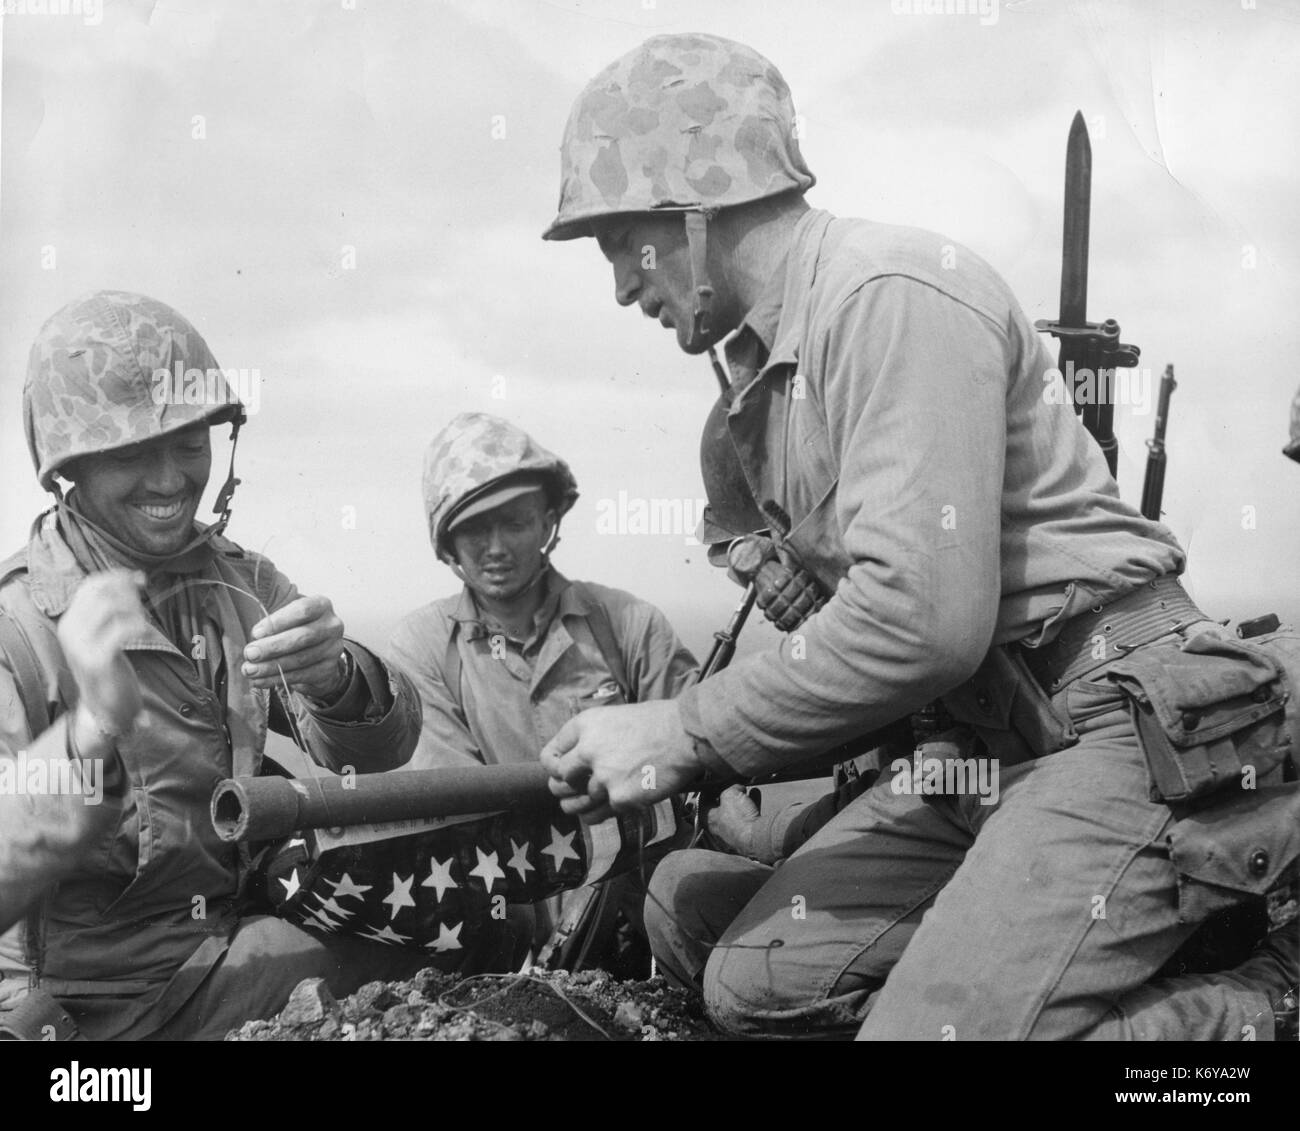 Tre Marines del ventottesimo reggimento della quinta Divisione Marine portato la loro bandiera americana alla sommità del monte Suribachi a Iwo Jima e mentre la battaglia ancora infuriava su altre parti della macchiate di sangue island, essi provocatoriamente sollevate vecchia gloria in molto facce del nemico. Iwo Jima, 23 febbraio 1945. Foto di Lou Lowery. Foto Stock